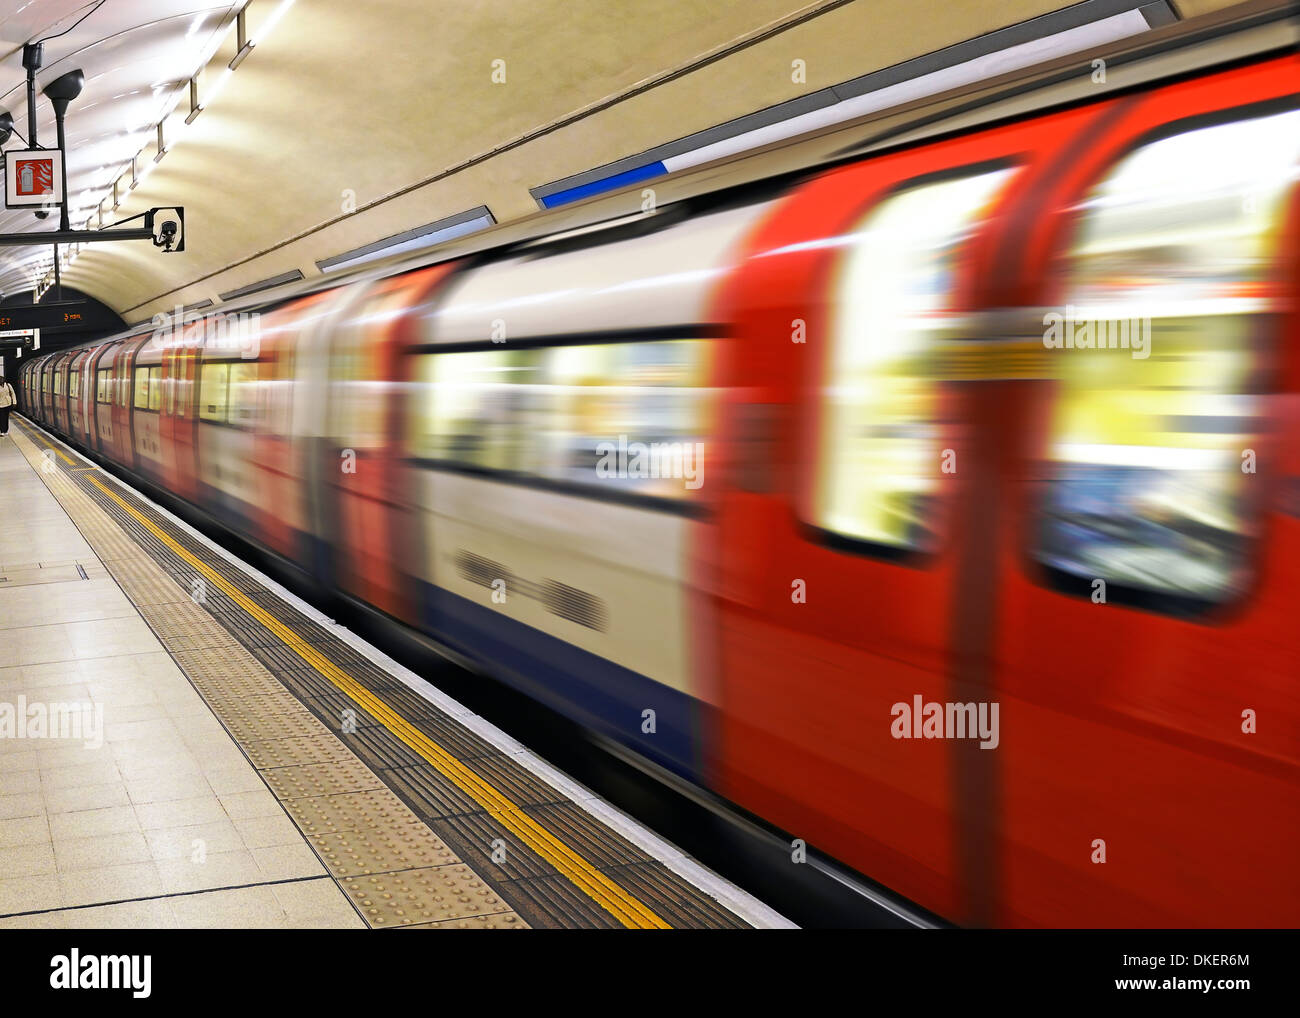 El Tren Subterráneo de Londres saliendo de una estación, Charing Cross, Londres, Reino Unido. Foto de stock